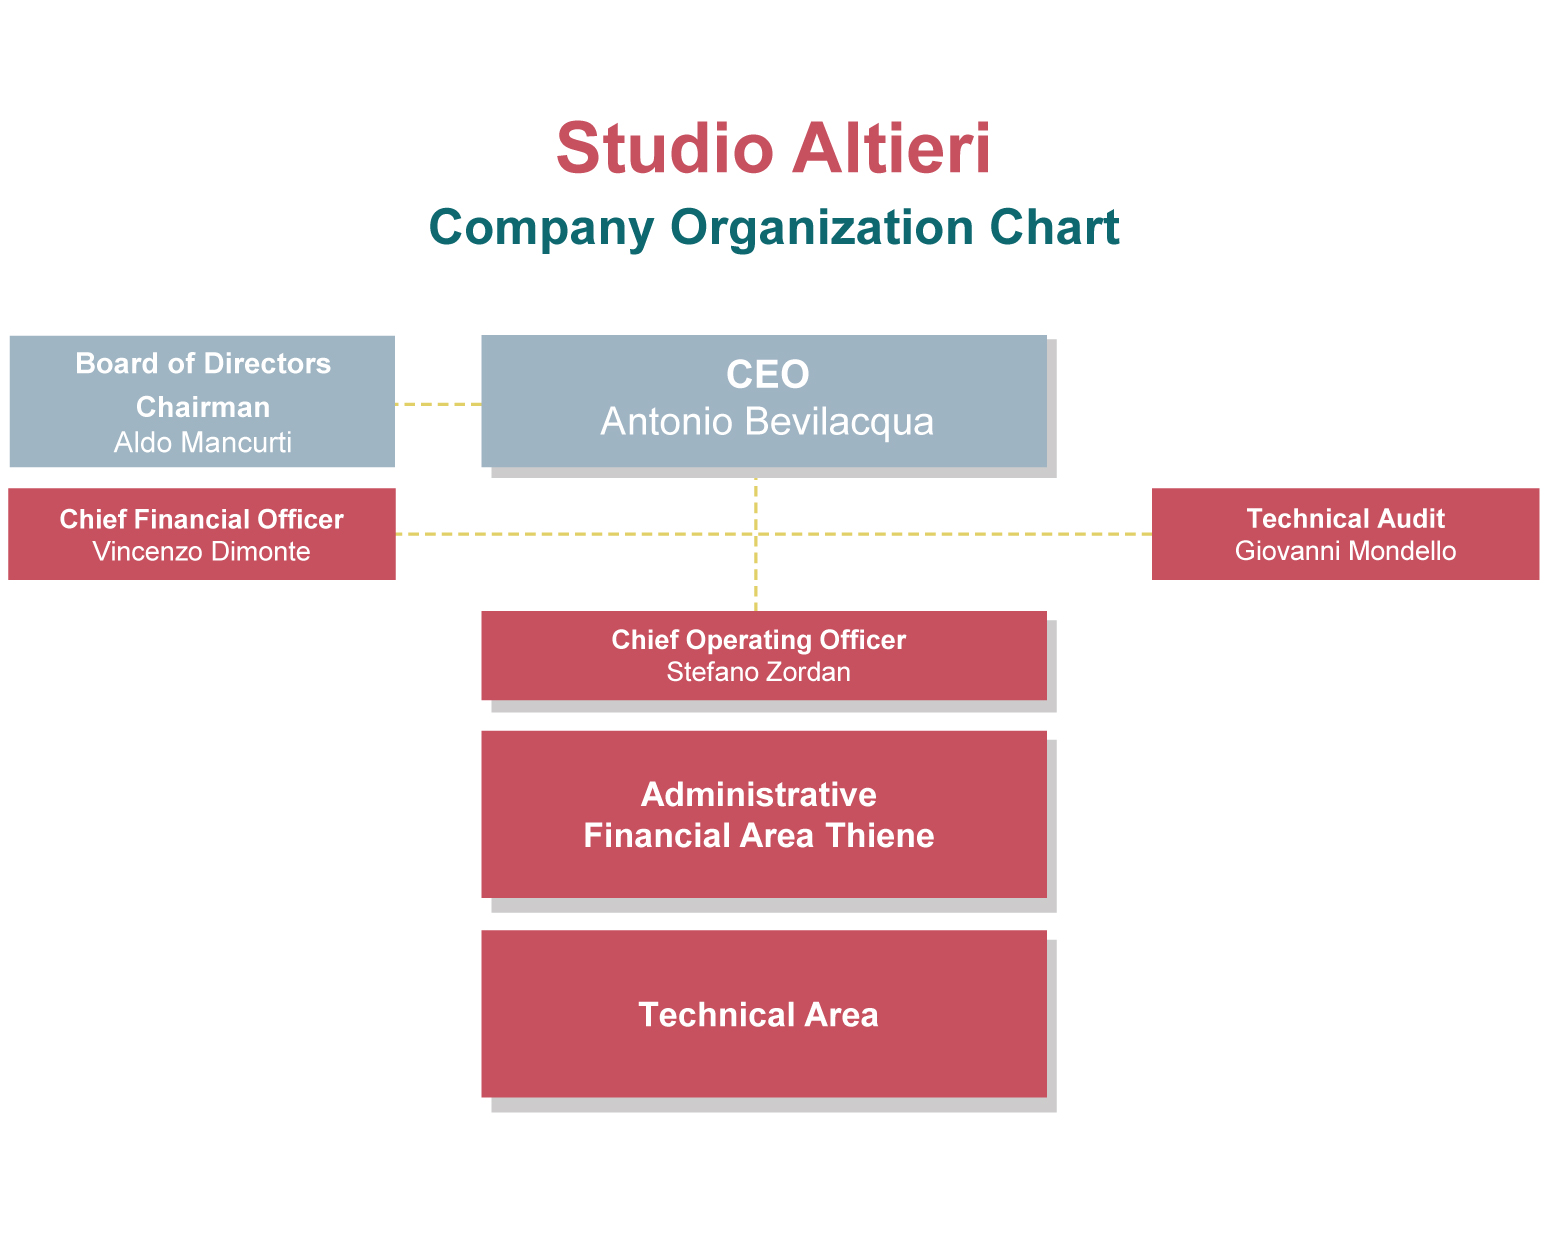 About Studio Altieri